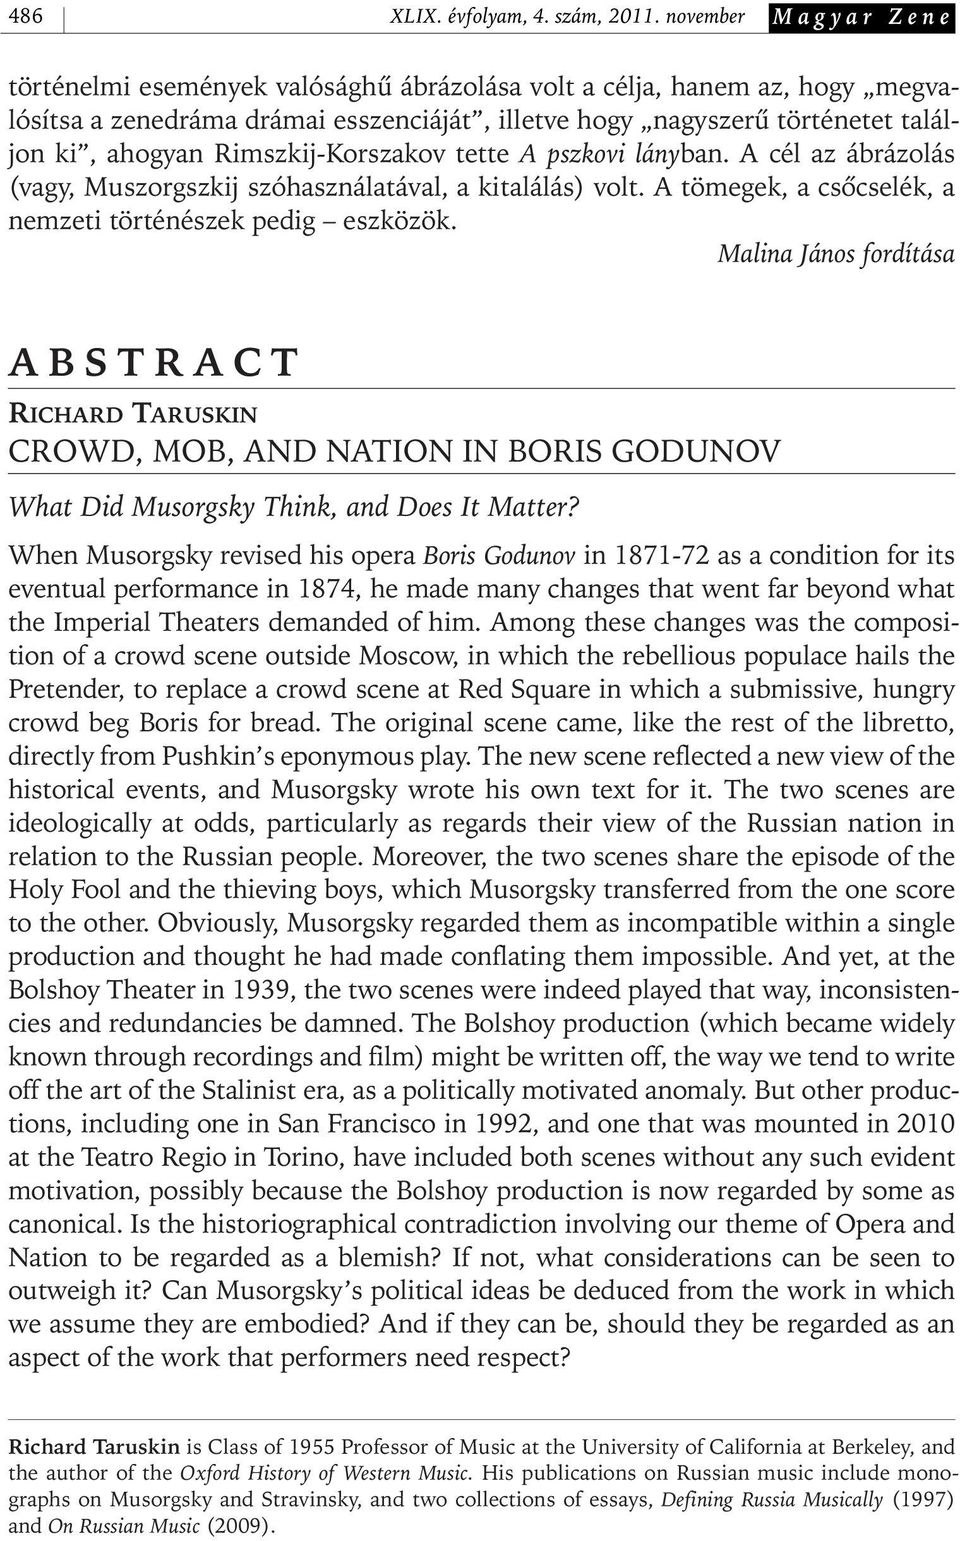 Rimszkij- Korszakov tette A pszkovi lányban. A cél az ábrázolás (vagy, Muszorgszkij szóhasználatával, a kitalálás) volt. A tömegek, a csôcselék, a nemzeti történészek pedig eszközök.